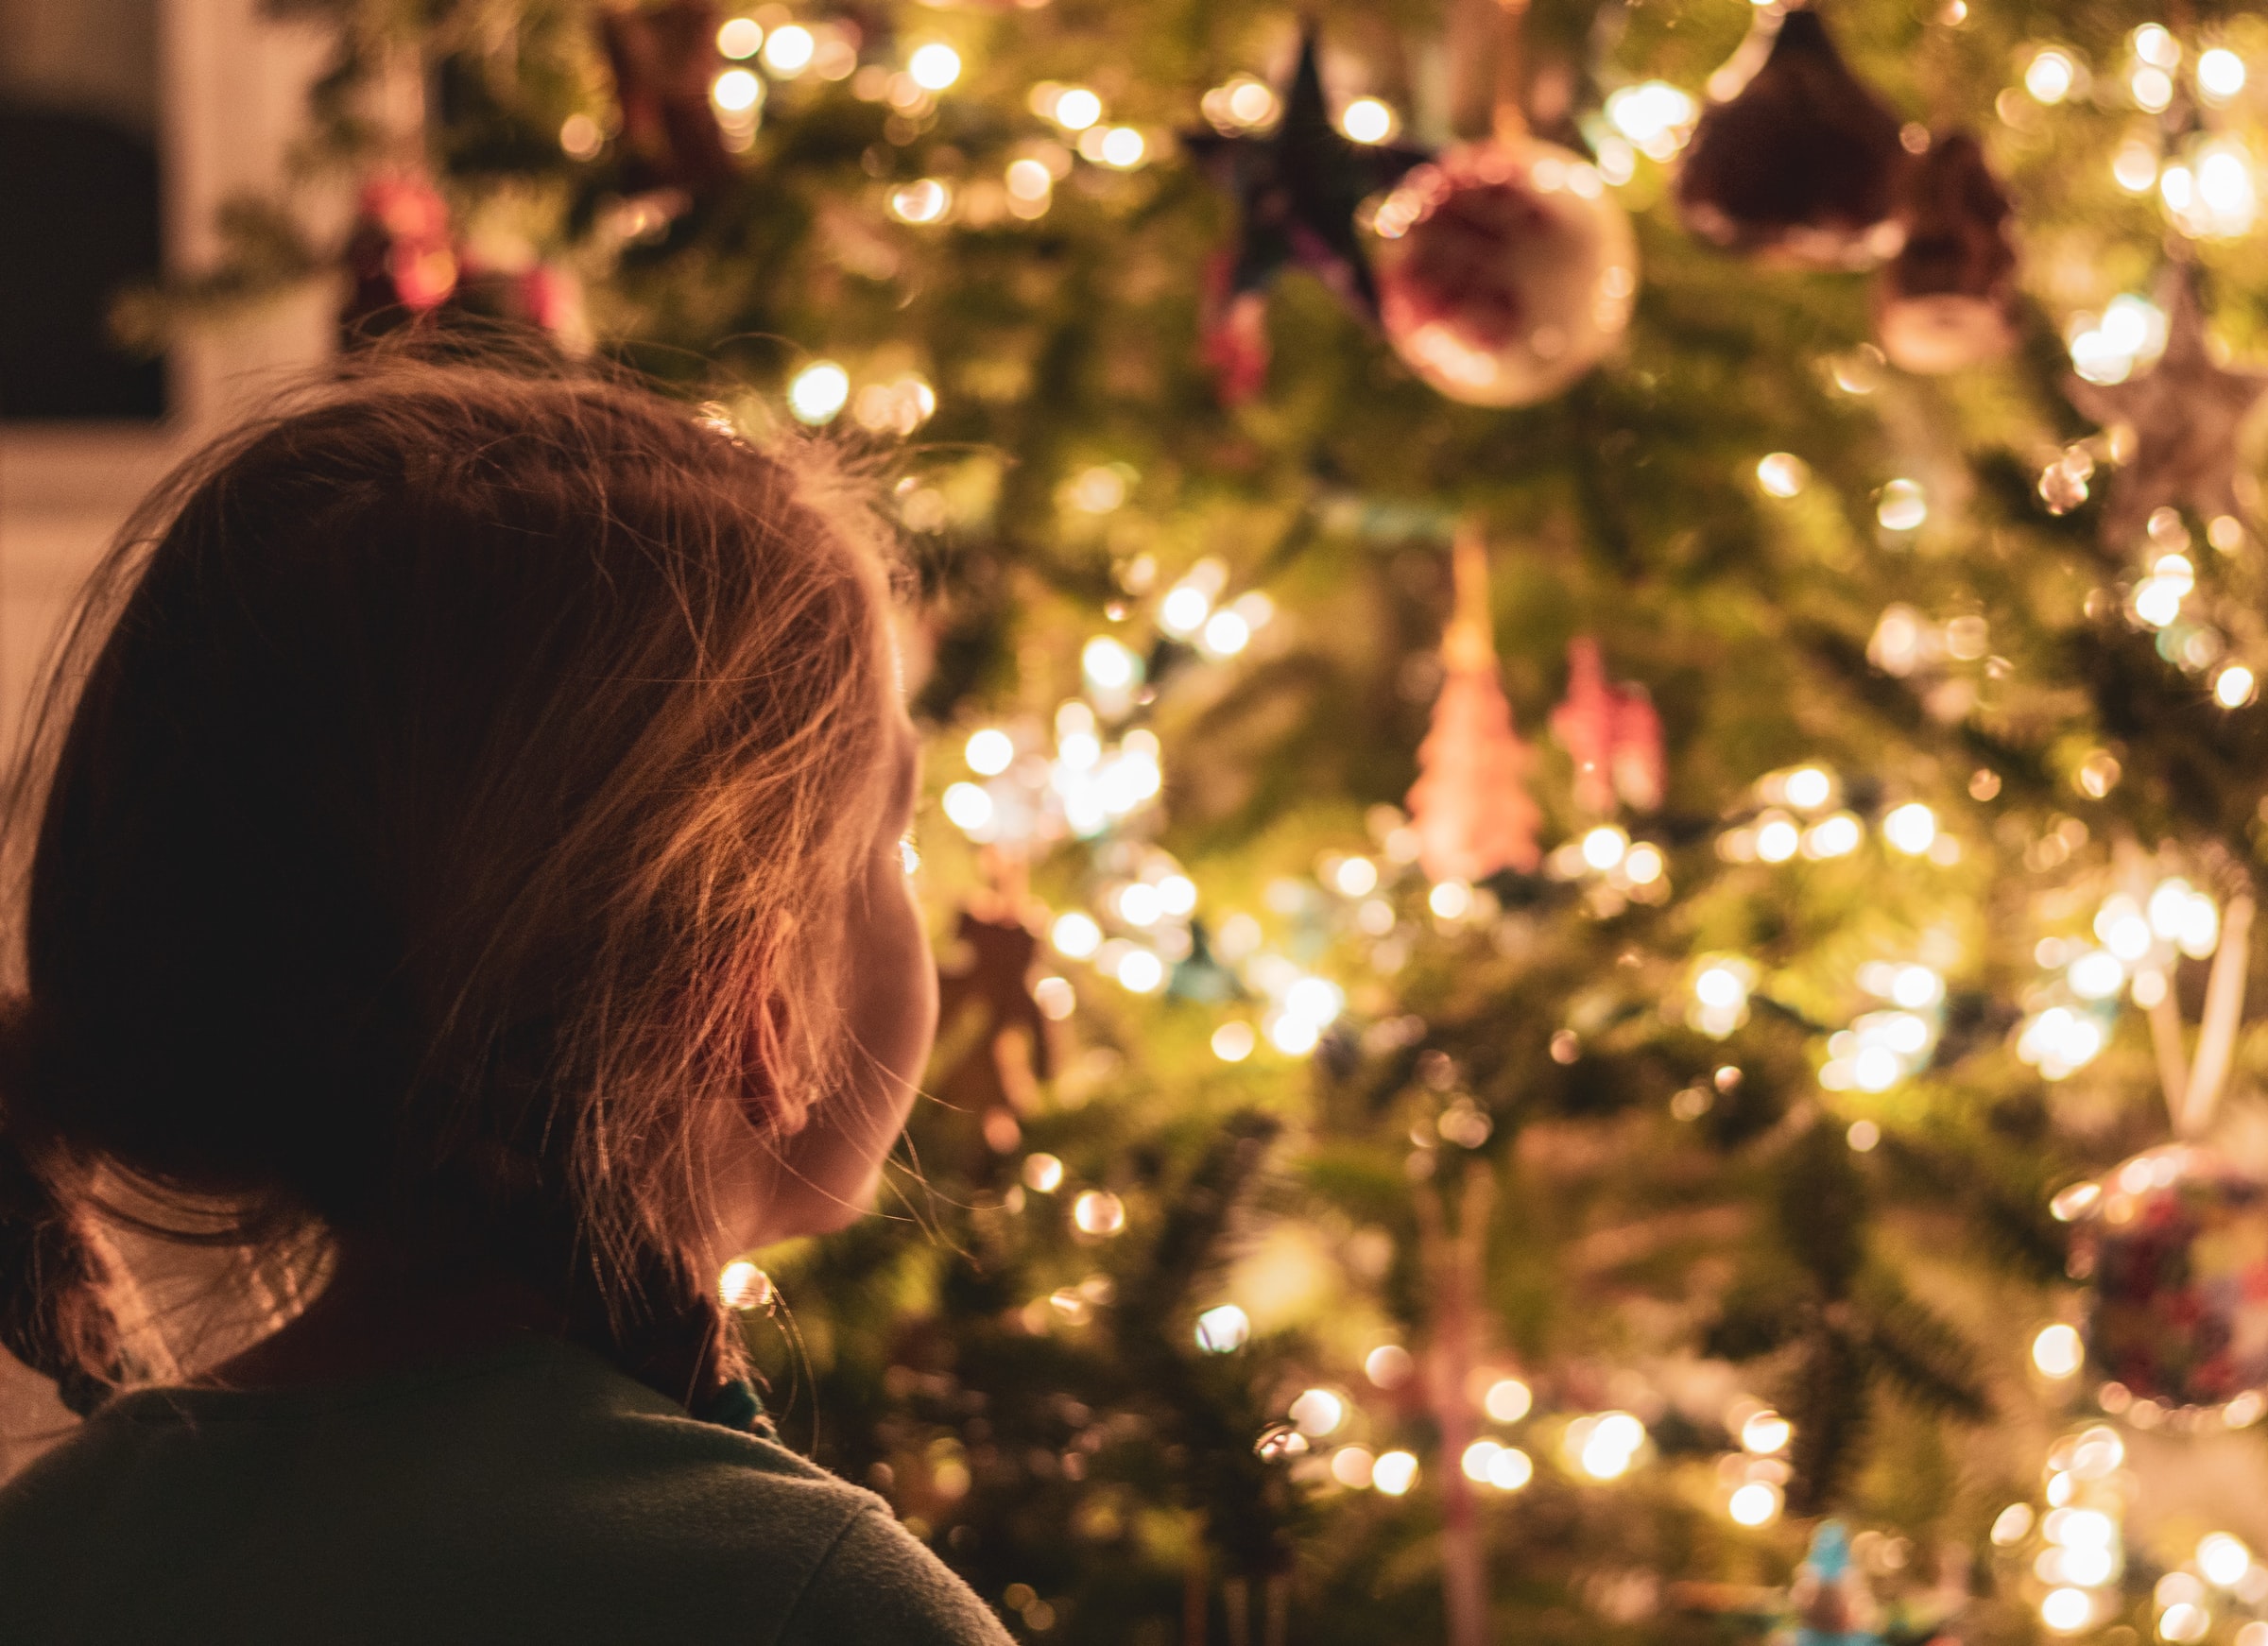 Ιστορίες Χριστουγέννων: Ήθη, Έθιμα και Παραδόσεις